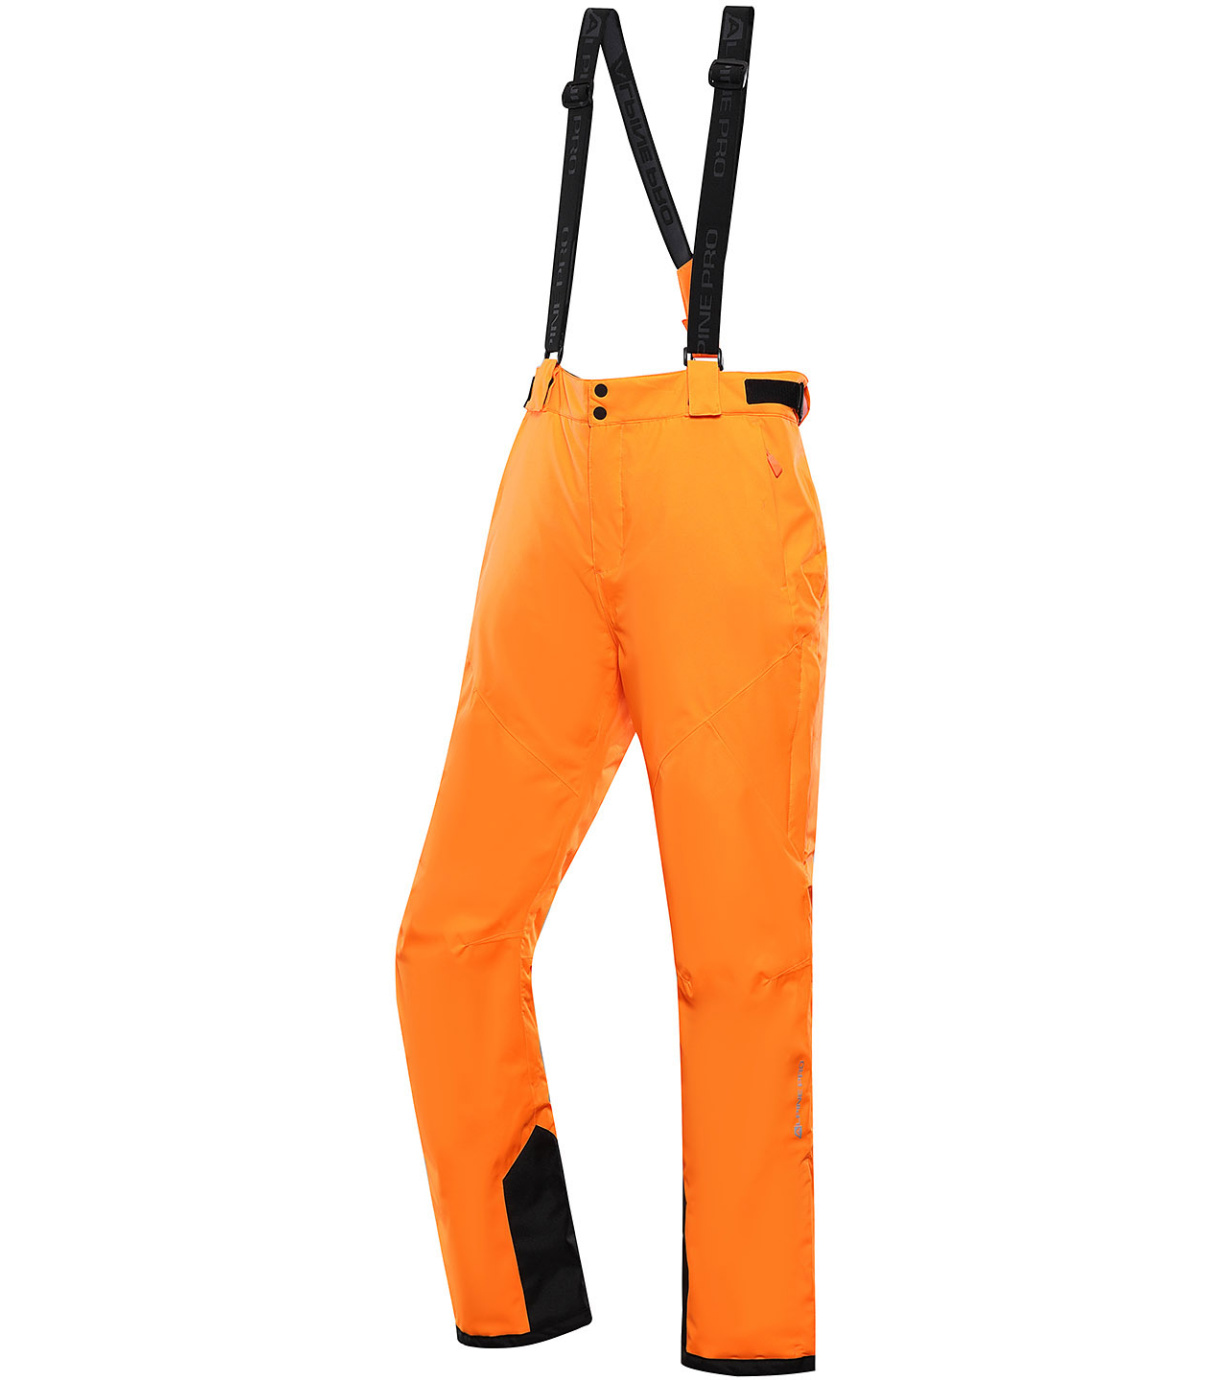 Pánské lyžařské kalhoty SANGO 9 ALPINE PRO neon pomeranč